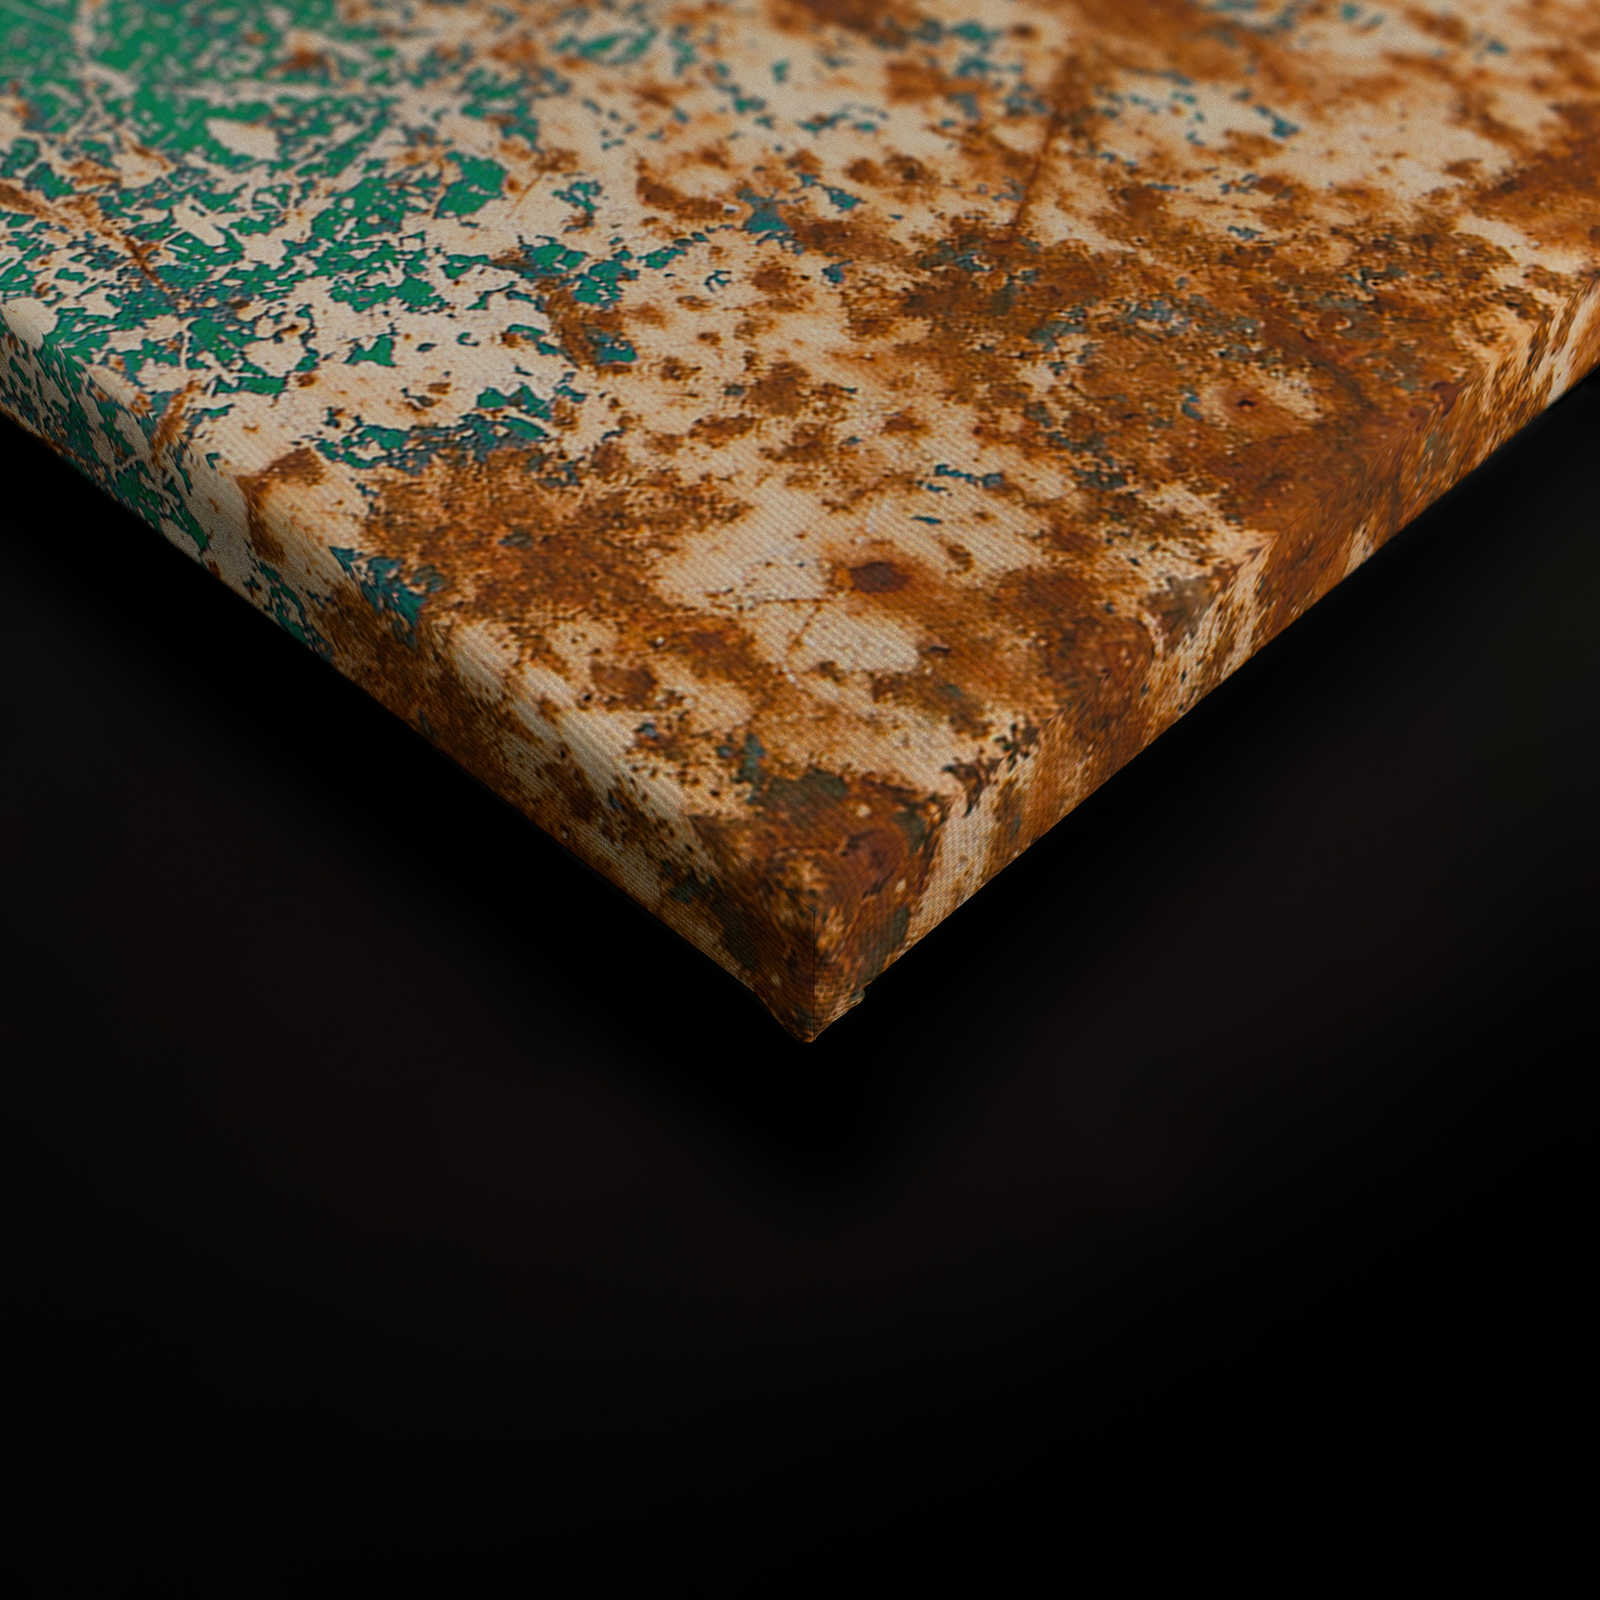             Lienzo metálico de estilo industrial con aspecto oxidado - 0,90 m x 0,60 m
        